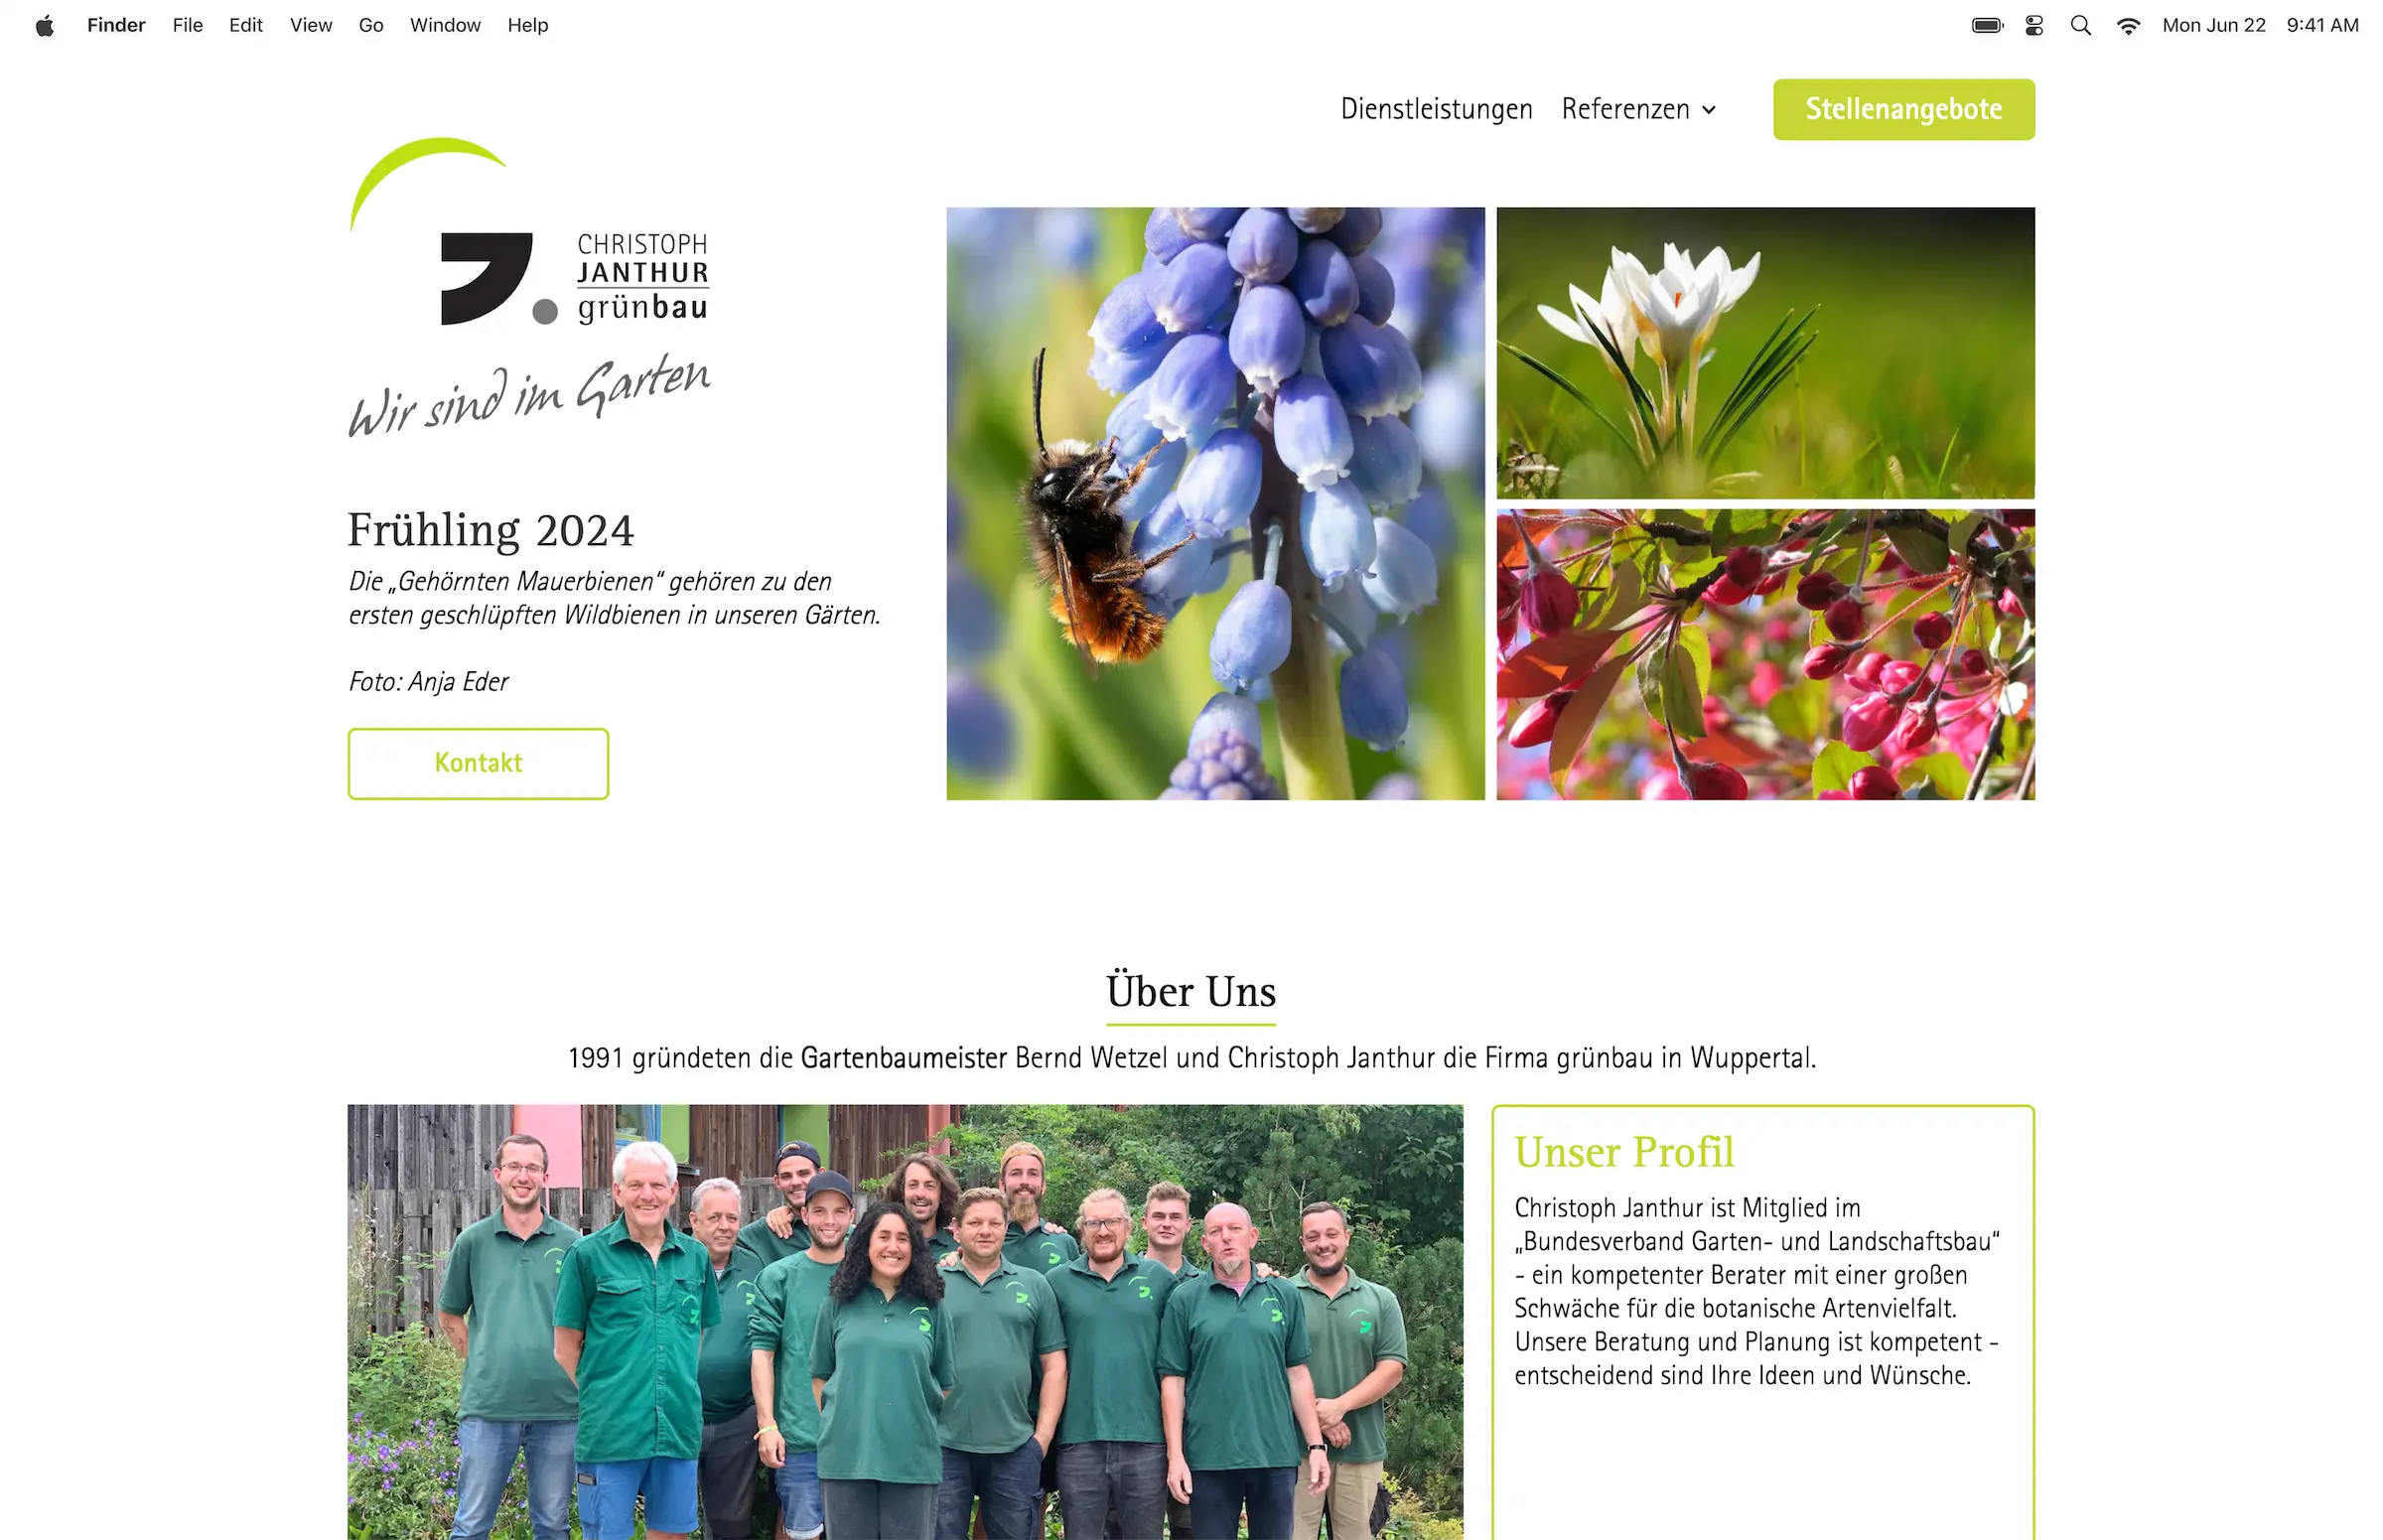 Webseite von Christoph Janthur Grünbau mit Abschnitten zu Dienstleistungen und Über Uns, Frühling 2024 Thema mit Bildern von Bienen auf Blumen, Krokussen und blühenden Sträuchern.